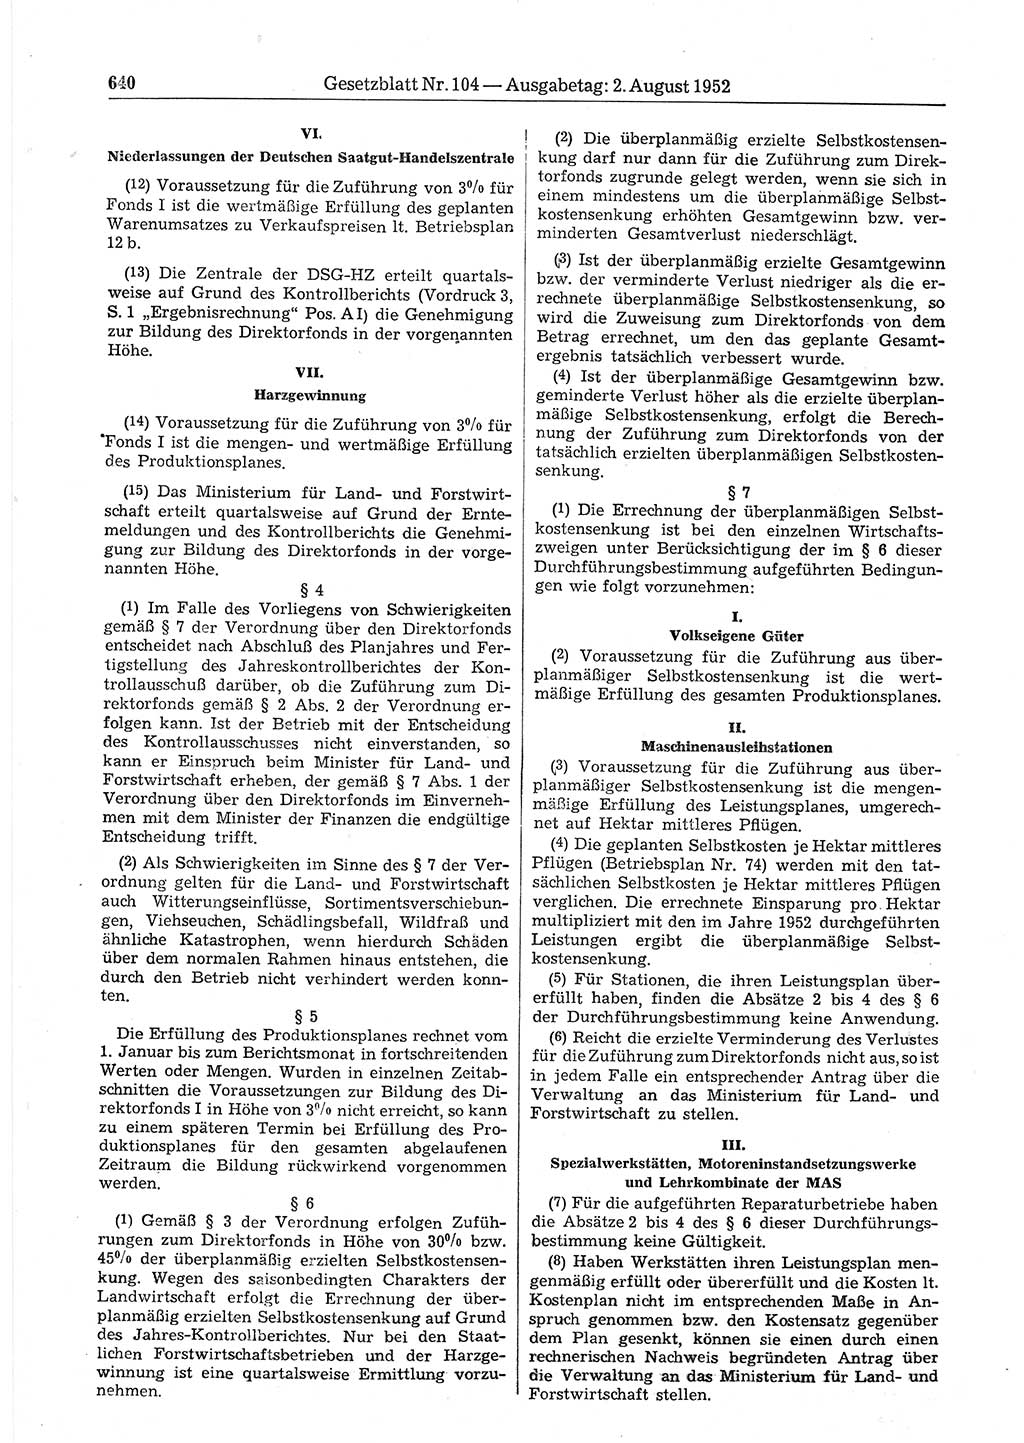 Gesetzblatt (GBl.) der Deutschen Demokratischen Republik (DDR) 1952, Seite 640 (GBl. DDR 1952, S. 640)